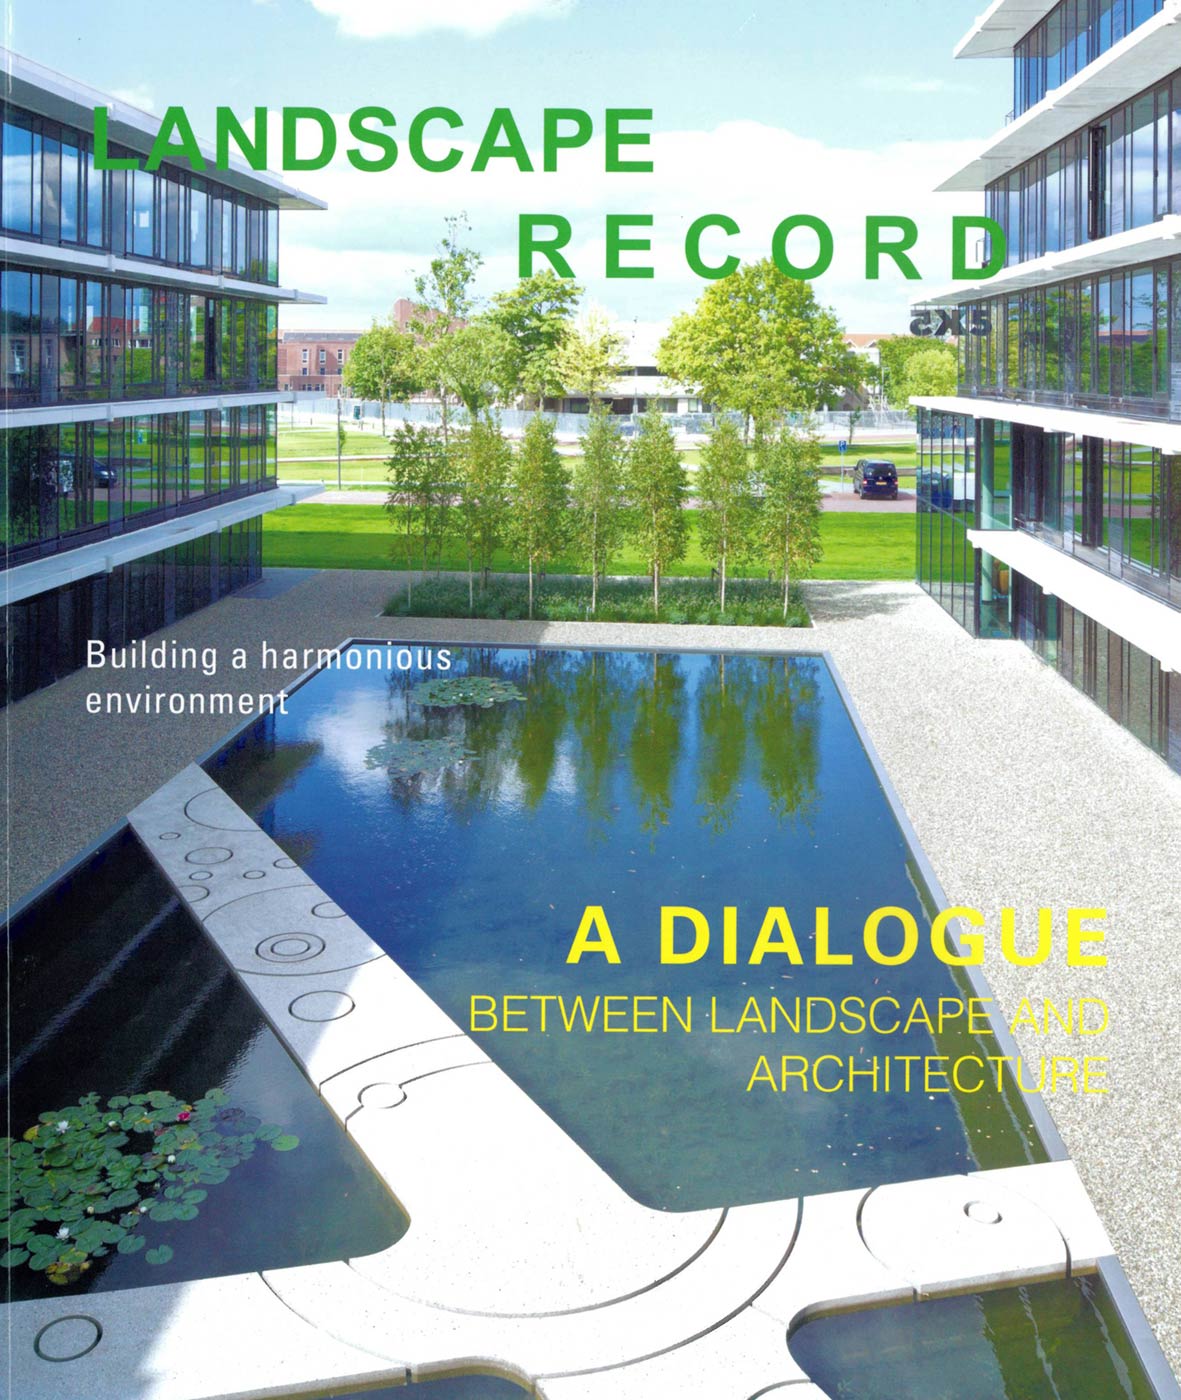 “Ulus Savoy Housing” is published on Landscape Record Magazine